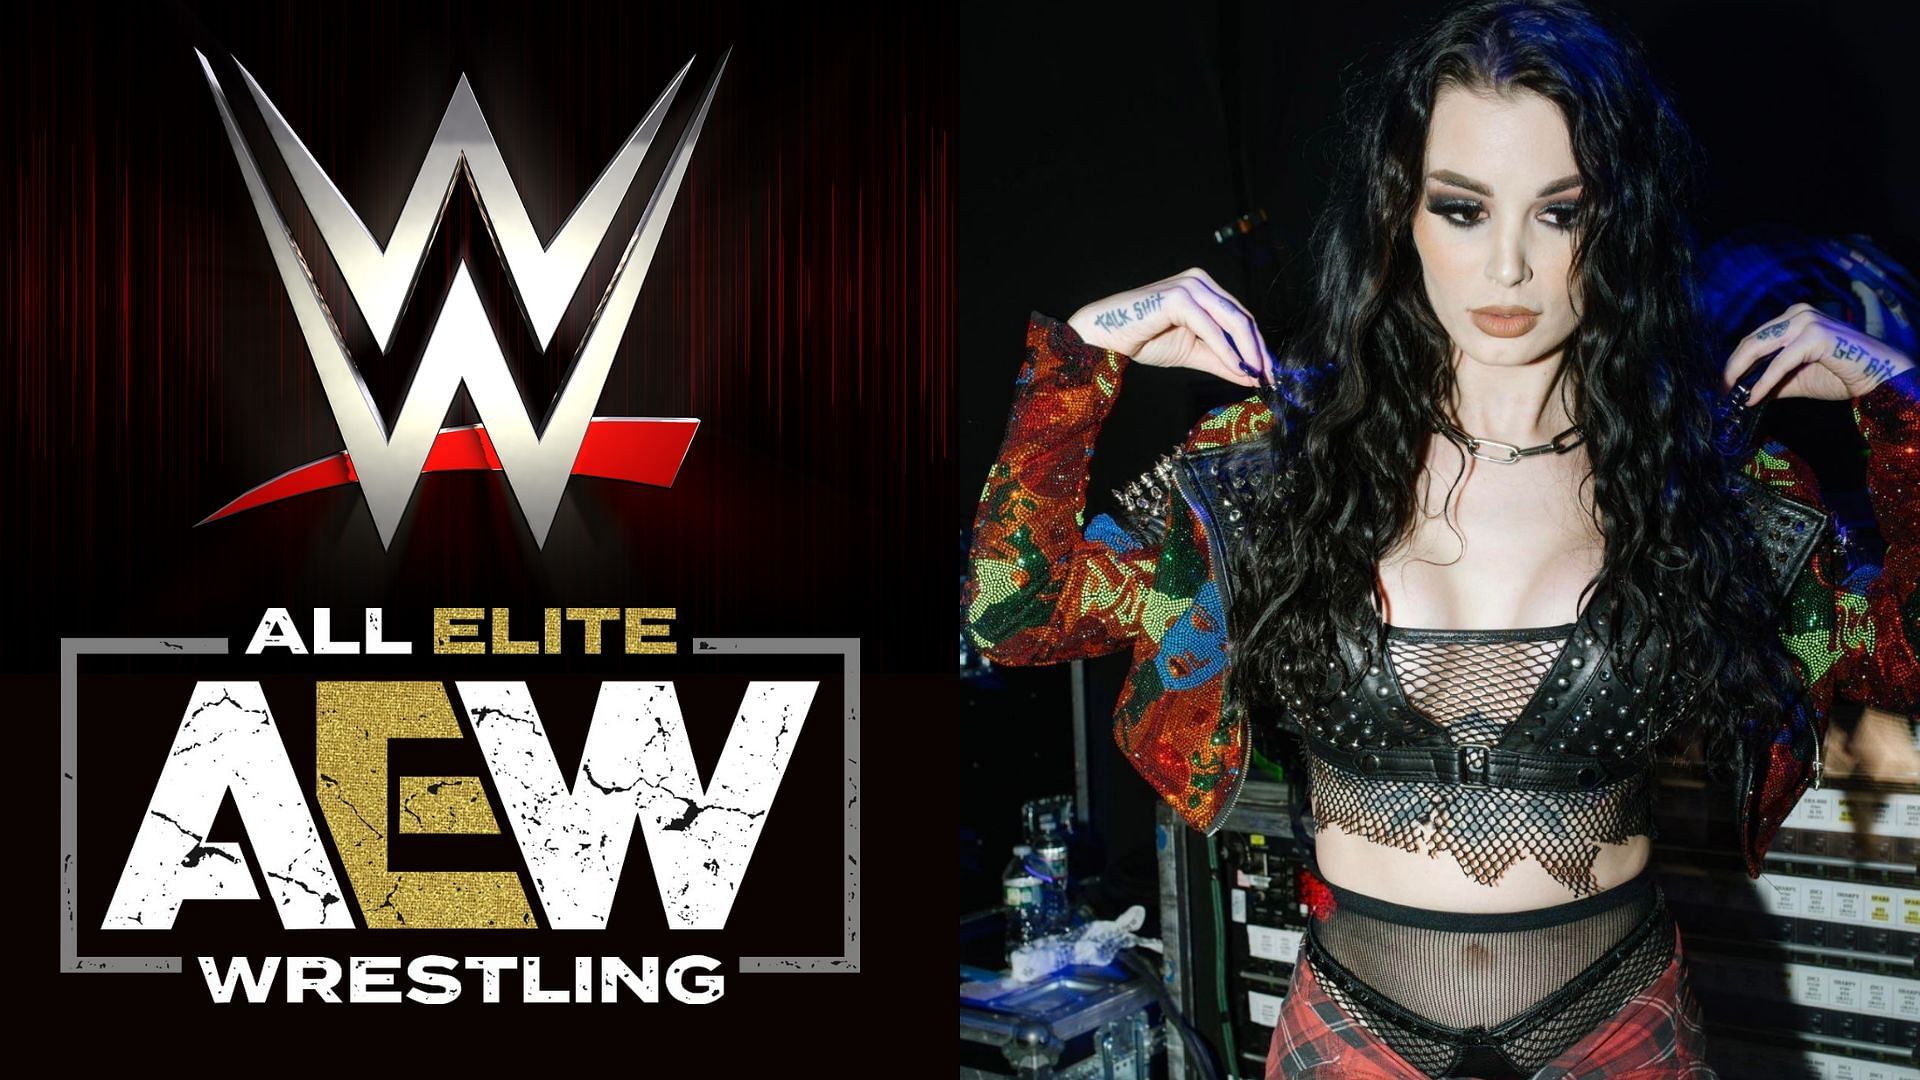 AEW and WWE logos (left), Saraya (right)